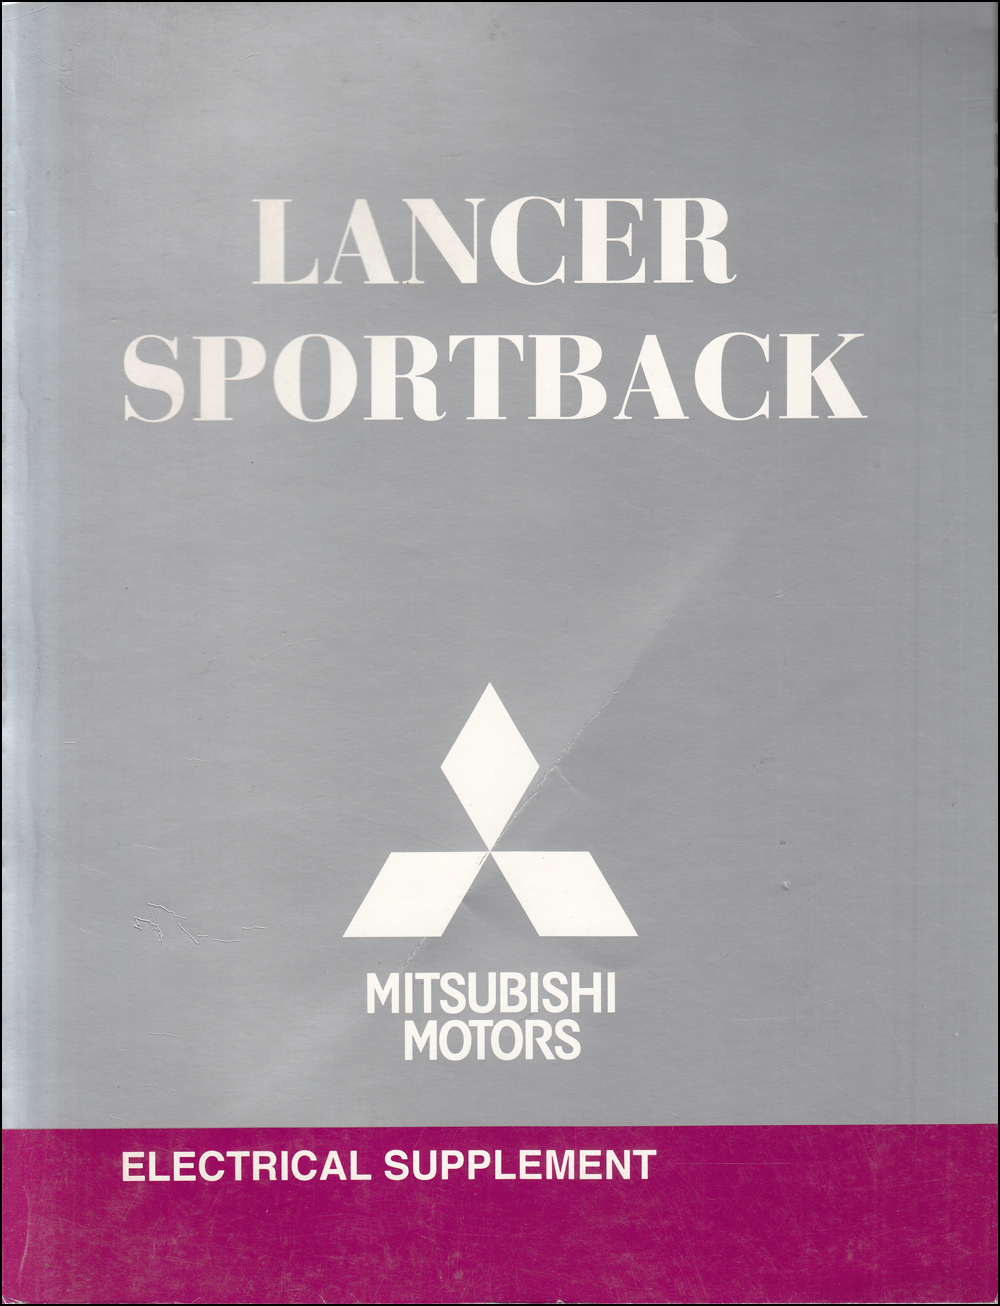 2010 Mitsubishi Lancer Sportback Electrical Wiring Diagram Manual Original 